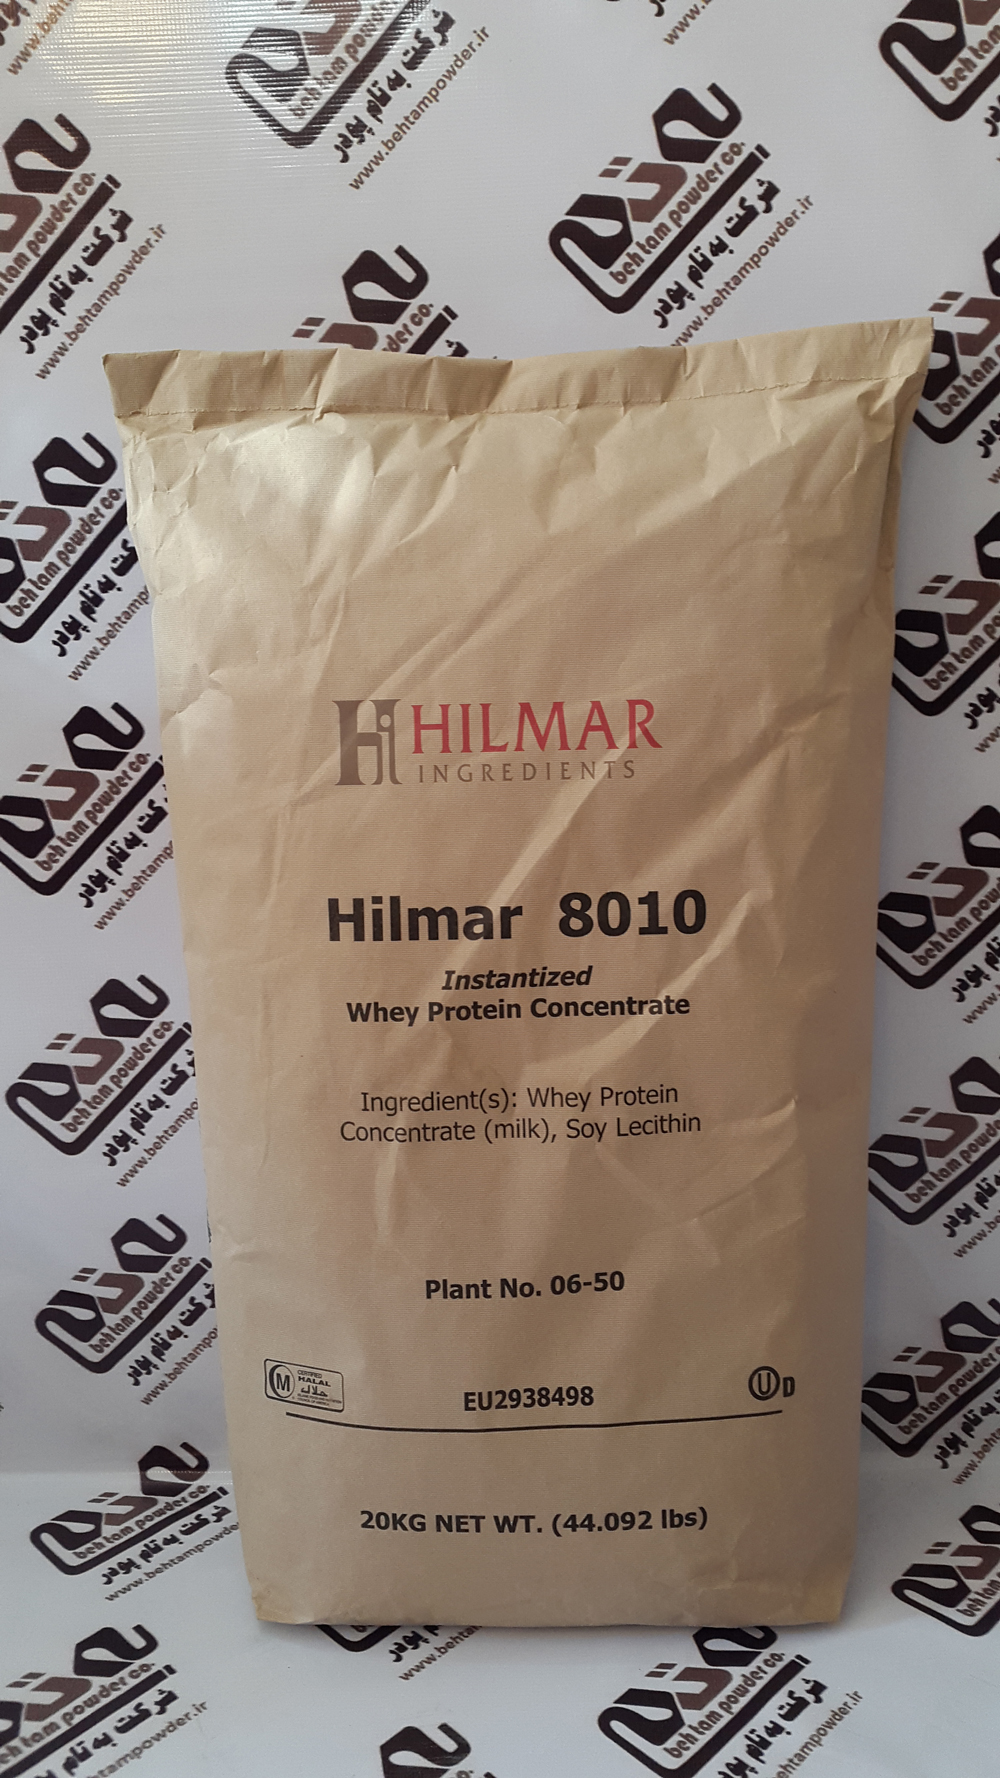 Hilmar-1.jpg - 1.04 MB